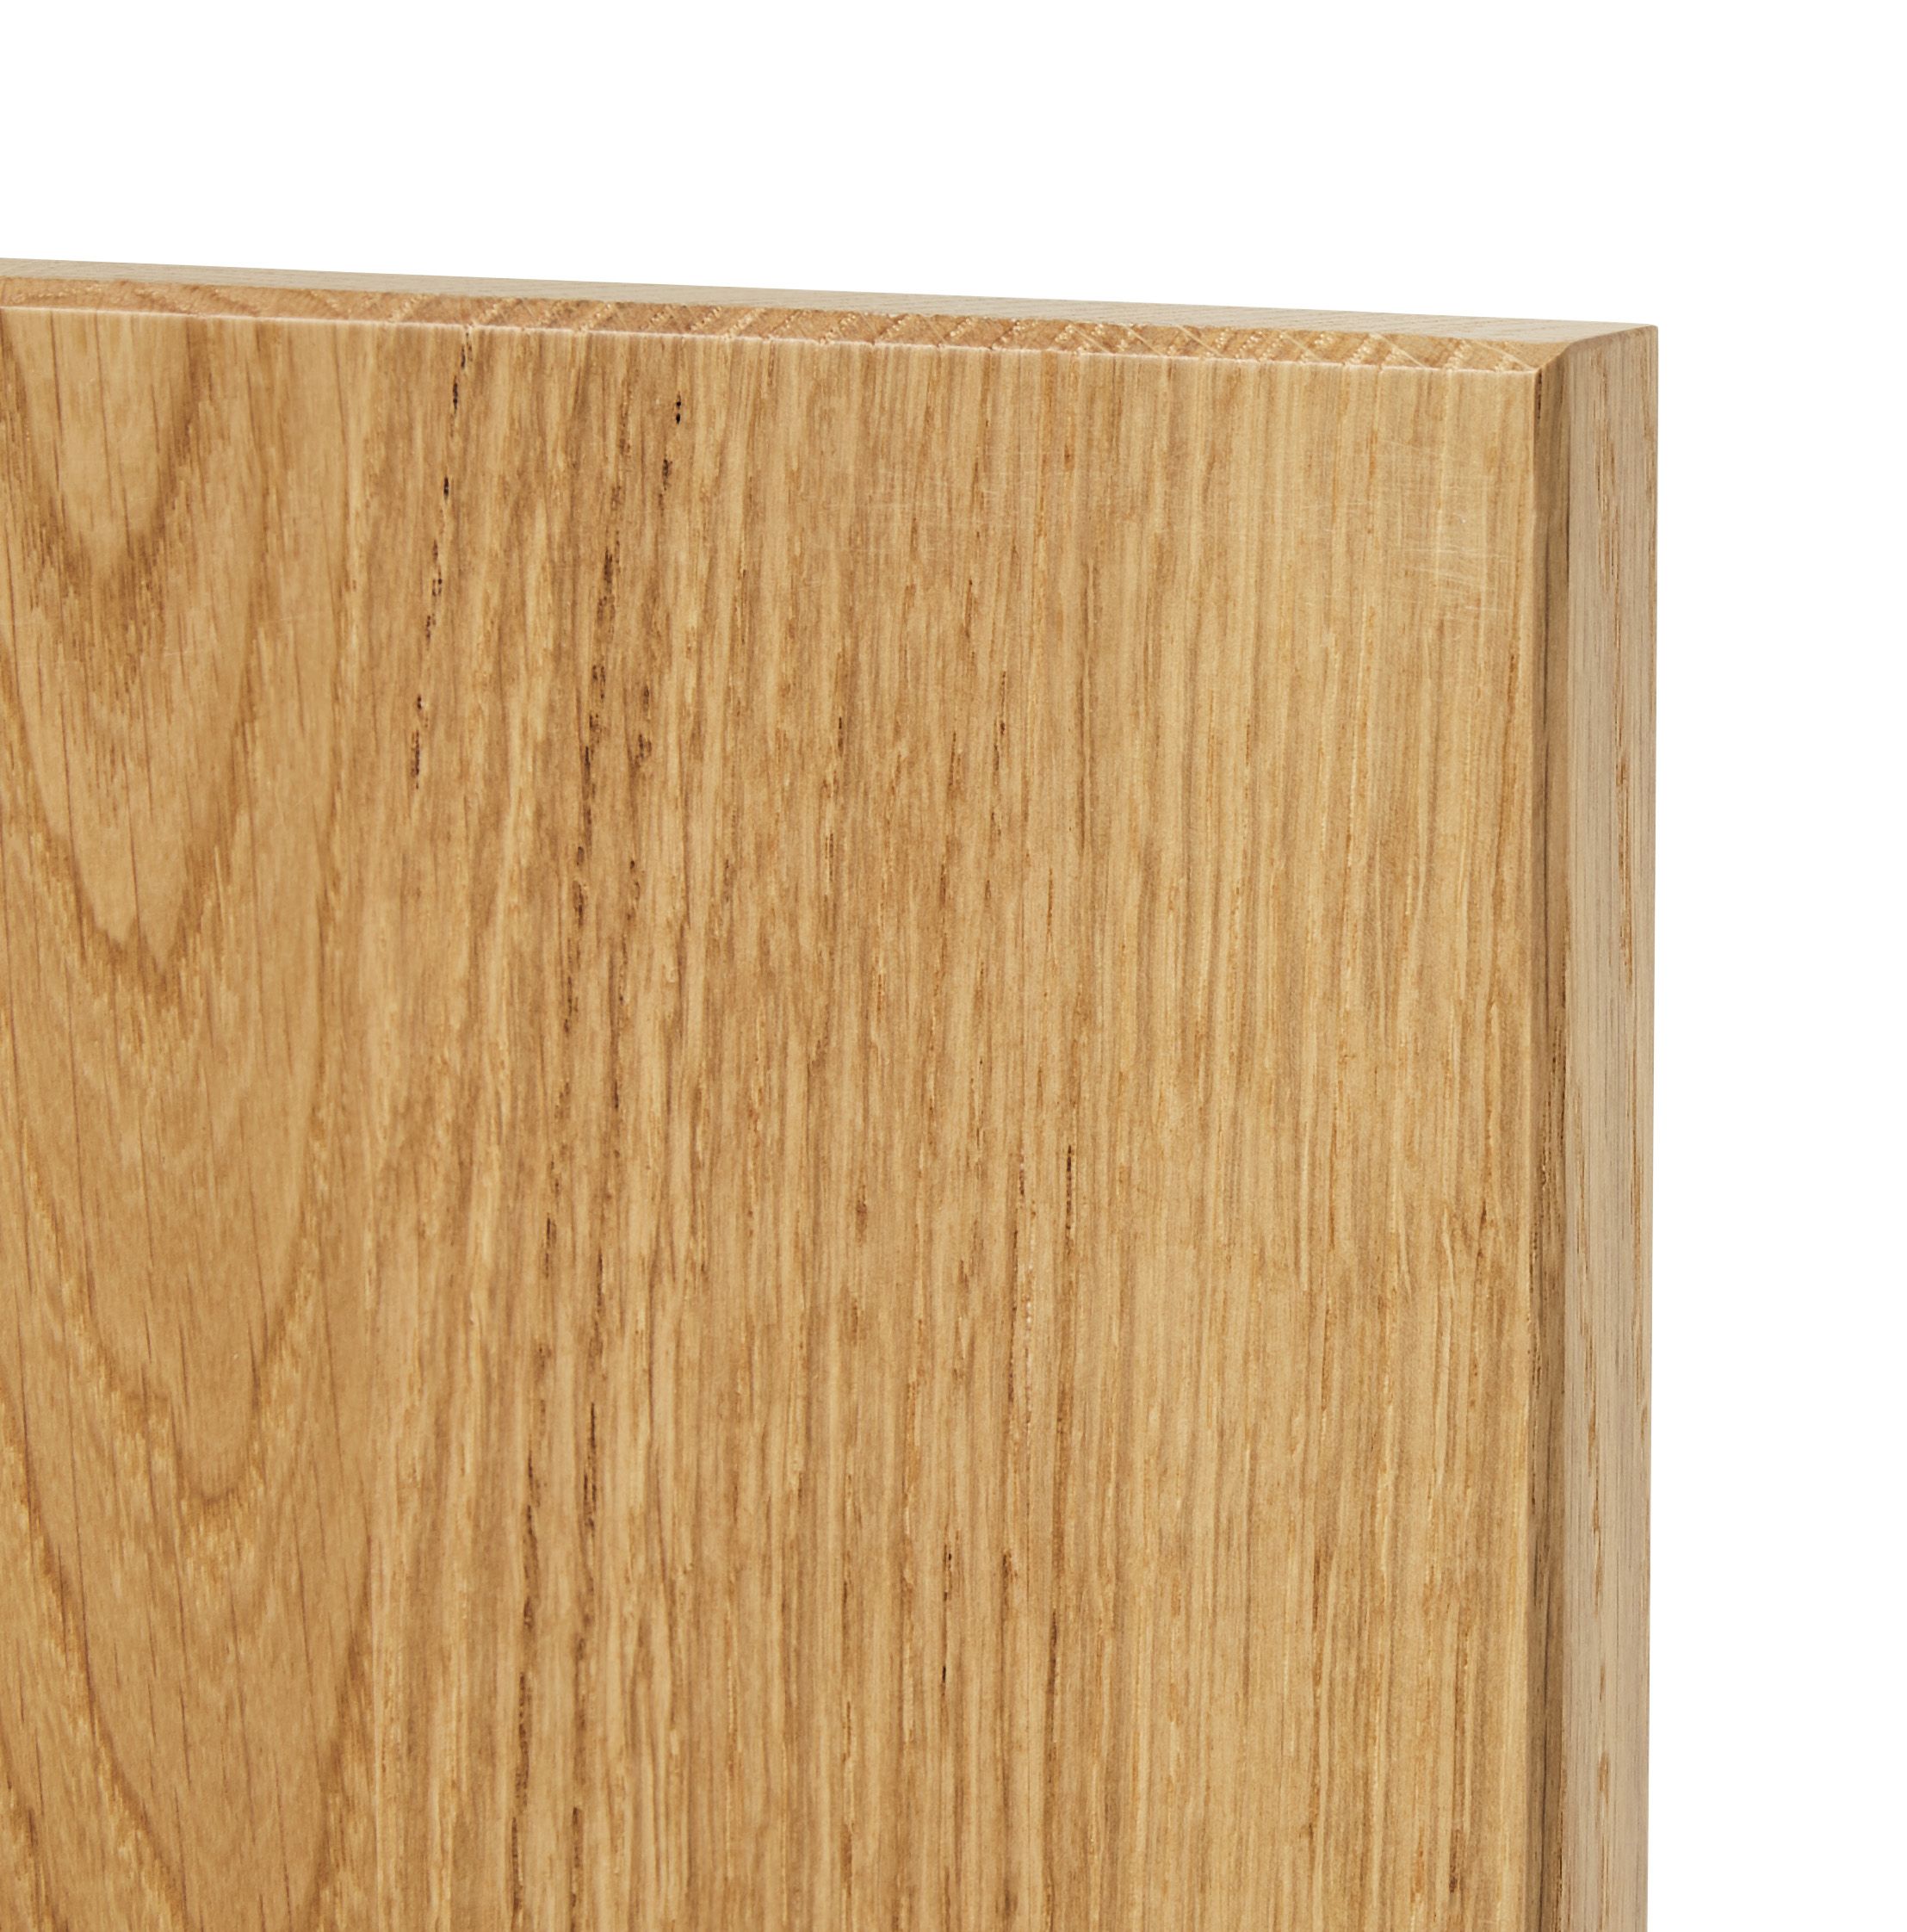 GoodHome Verbena Natural oak shaker Highline Cabinet door (W)150mm (H)715mm (T)20mm